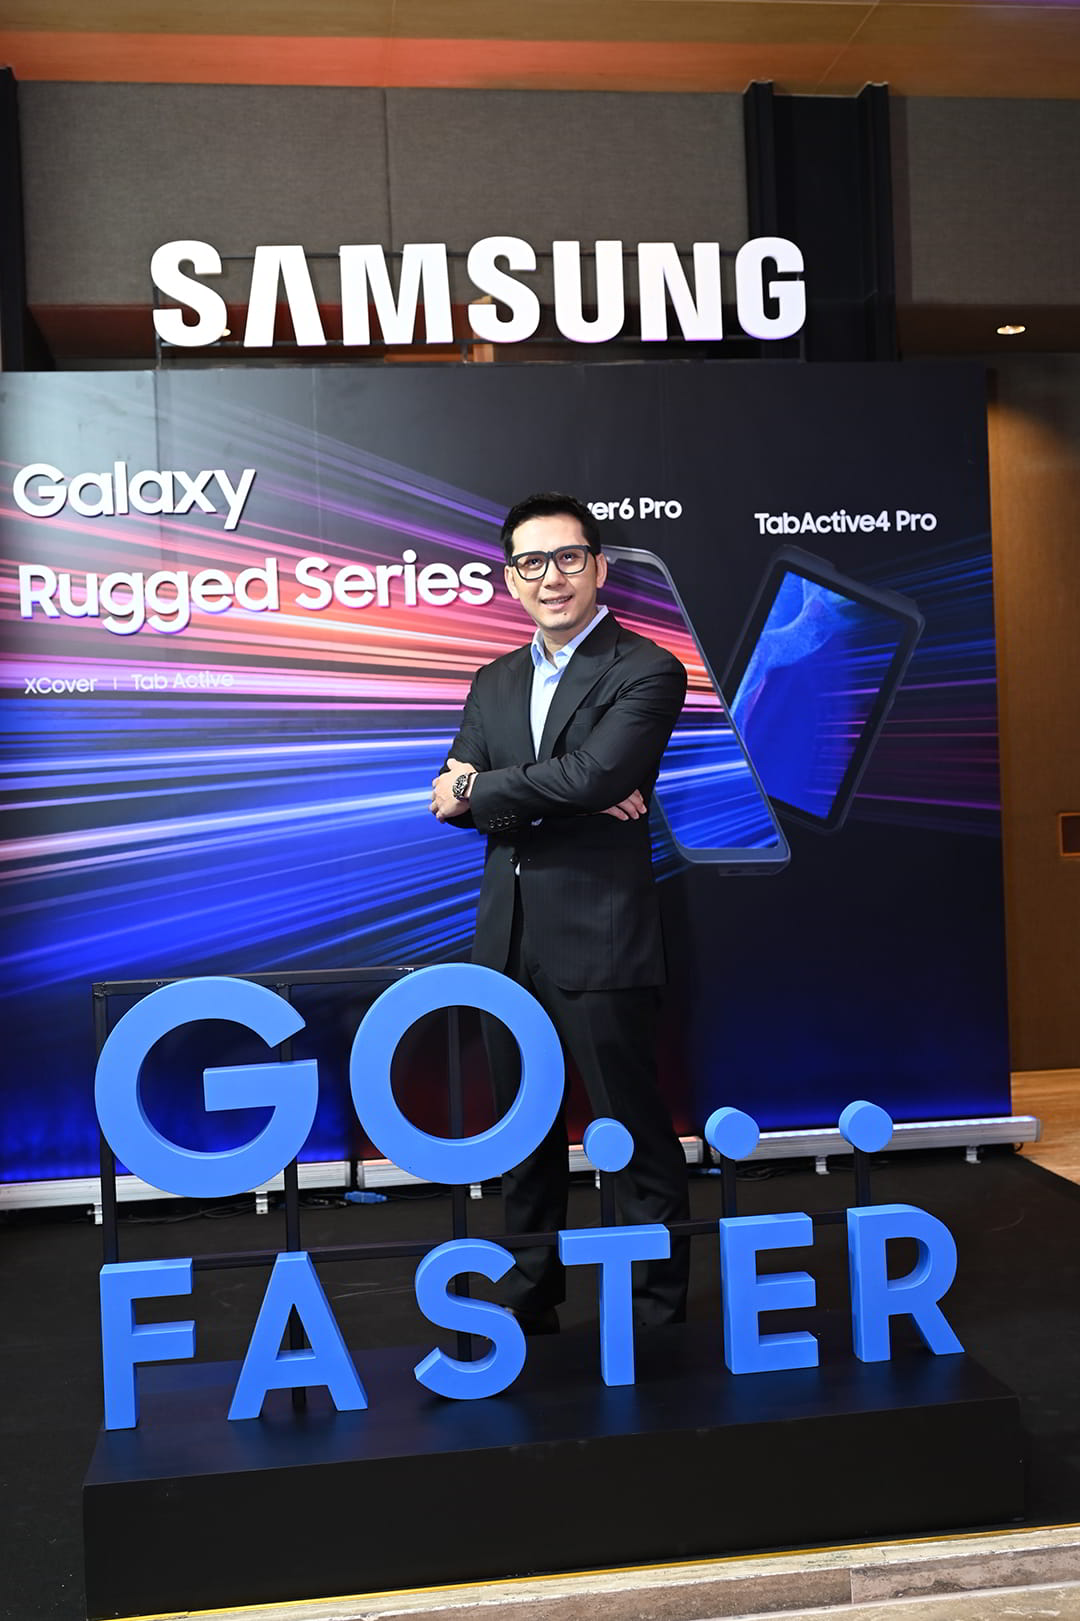 ซัมซุงตอกย้ำความเป็นผู้นำตลาดสมาร์ทโฟนกลุ่มธุรกิจลูกค้าองค์กร เปิดตัว  Xcover6 Pro 5G และ Tabactive4 Pro 5G ตอบโจทย์การทำงานแบบไฮบริด  ด้วยผลิตภัณฑ์ Rugged Device ที่รองรับระบบ 5G เป็นครั้งแรกในประเทศไทย -  Mobileocta